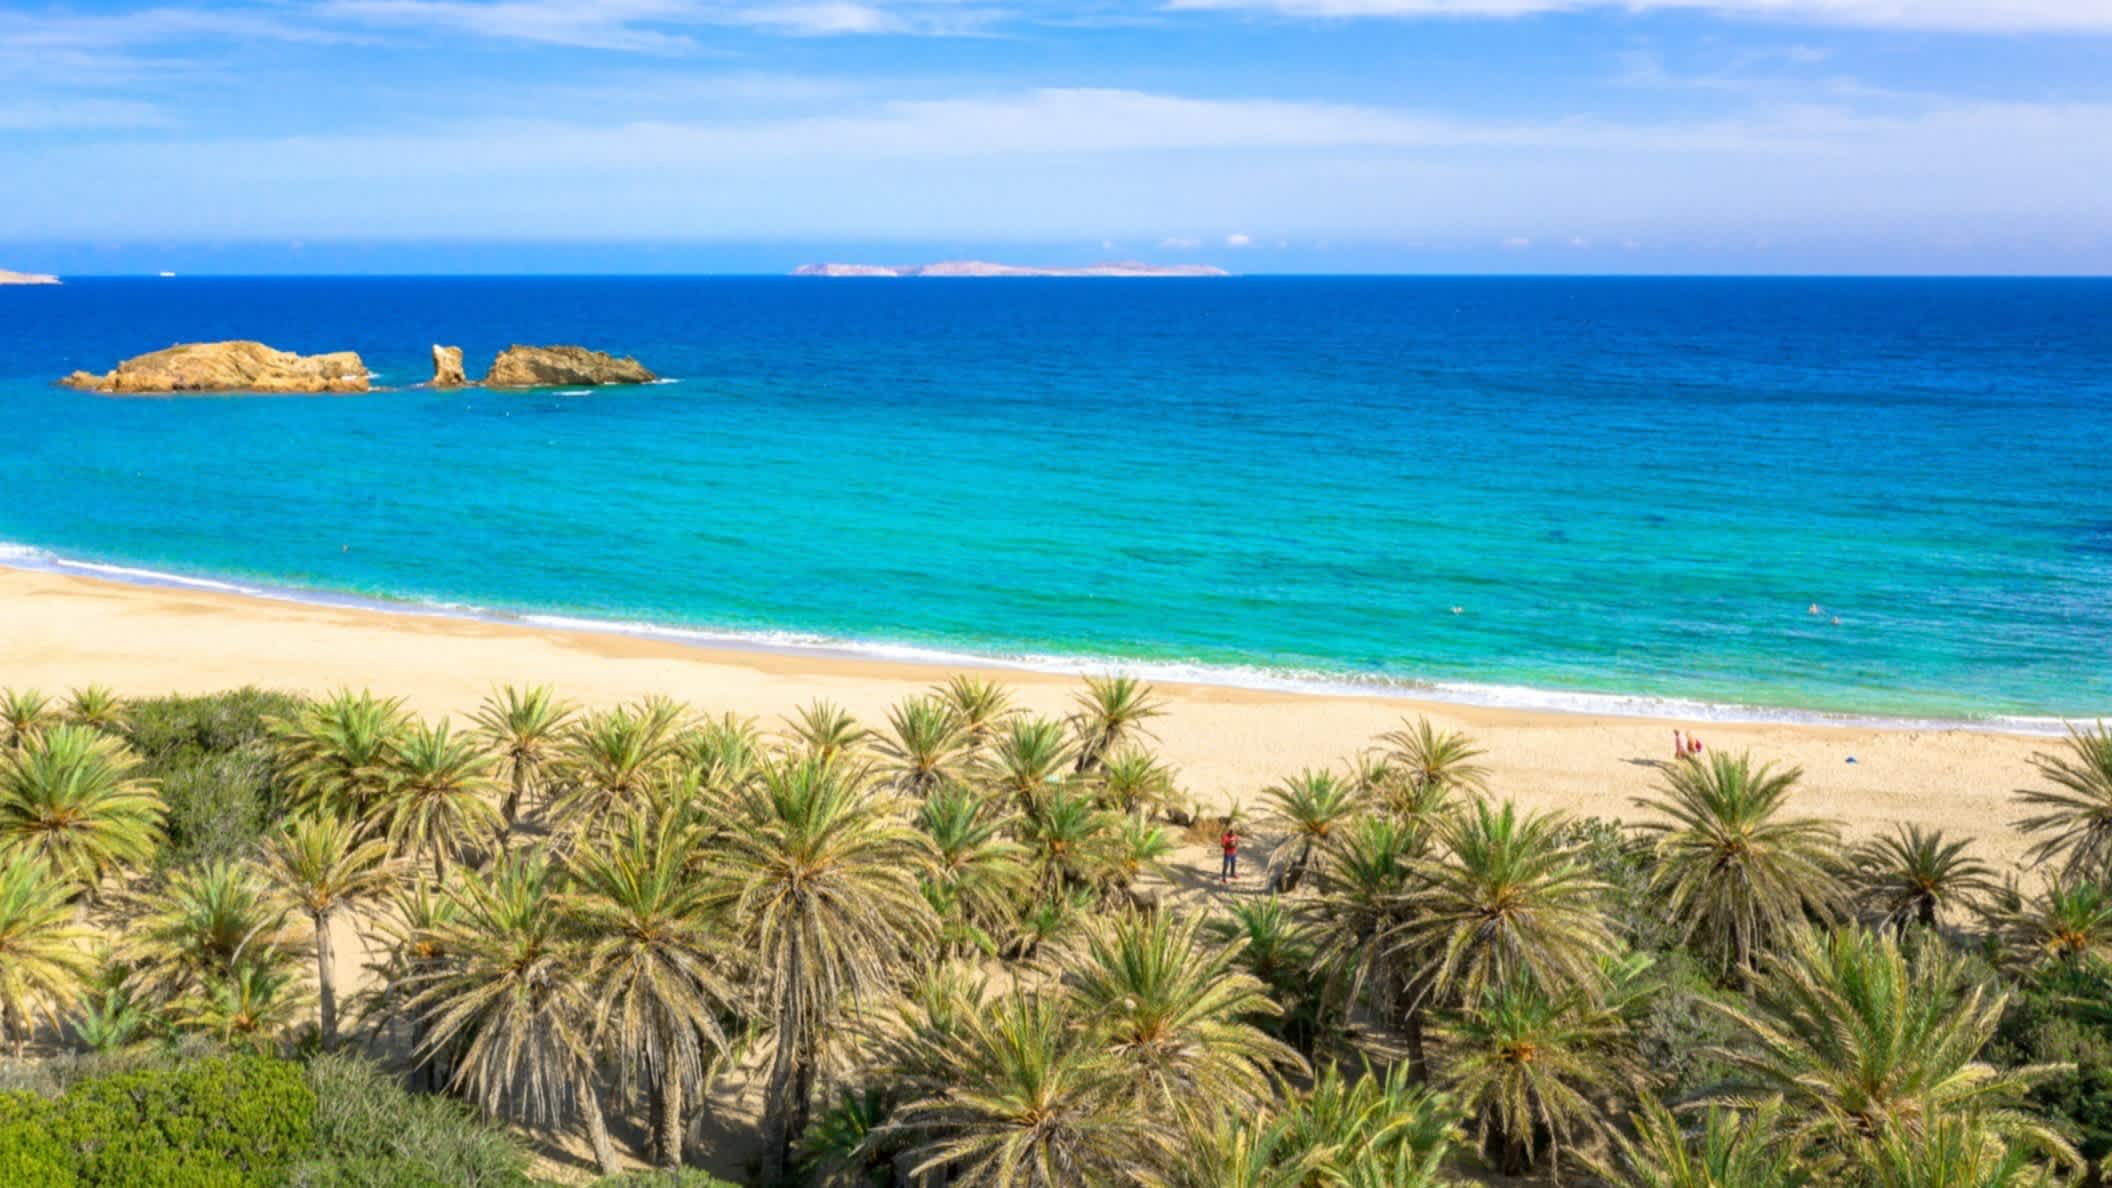 Landschaft mit Palmen von dem Strand in Vai, Kreta, Griechenland.

